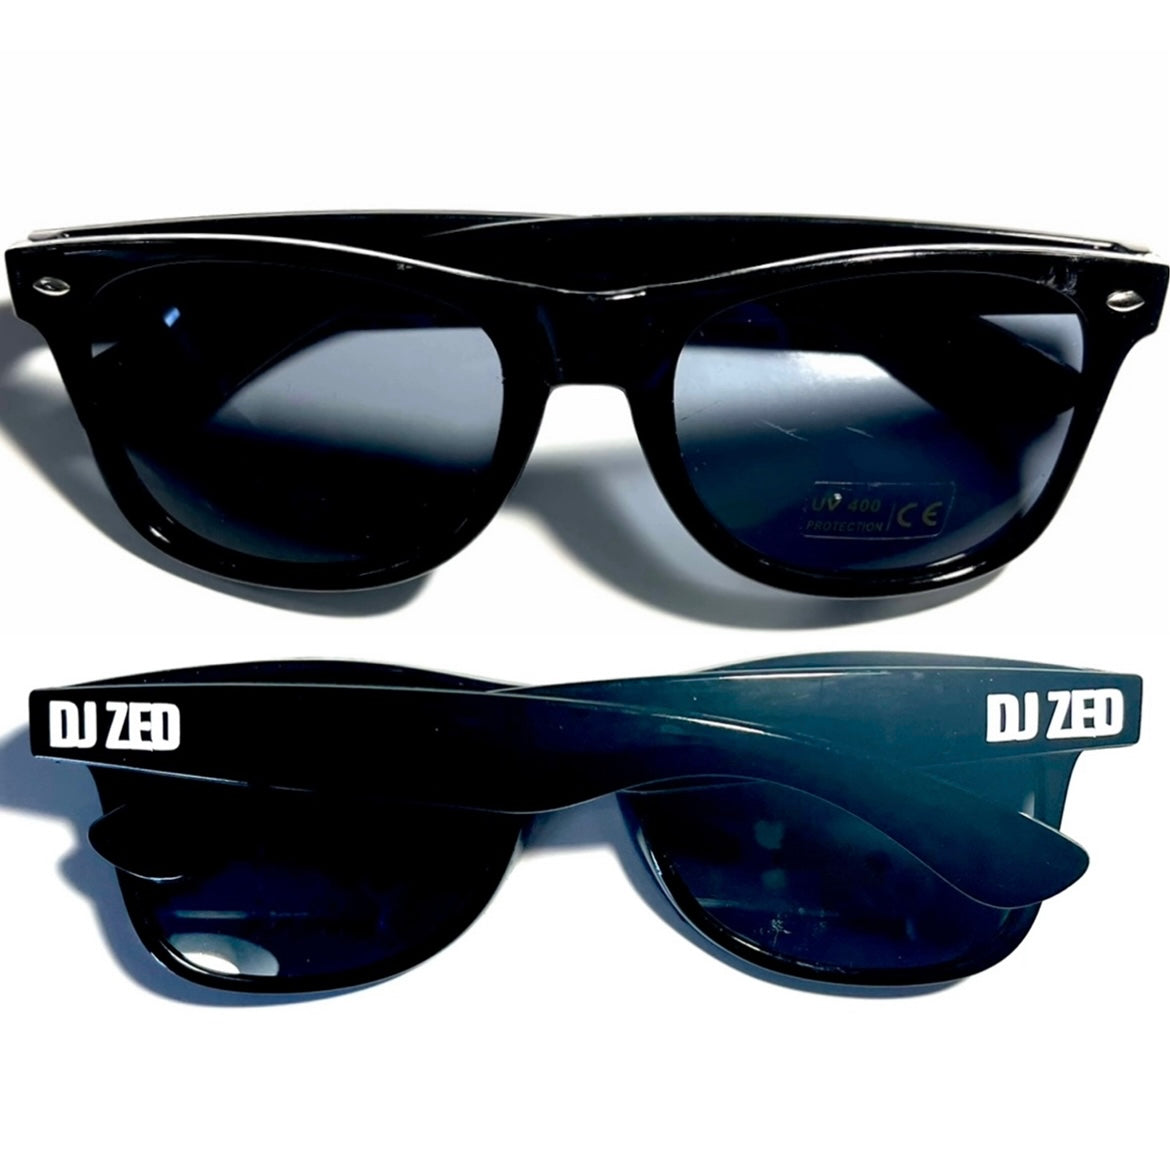 DJ Zed Sunglasses